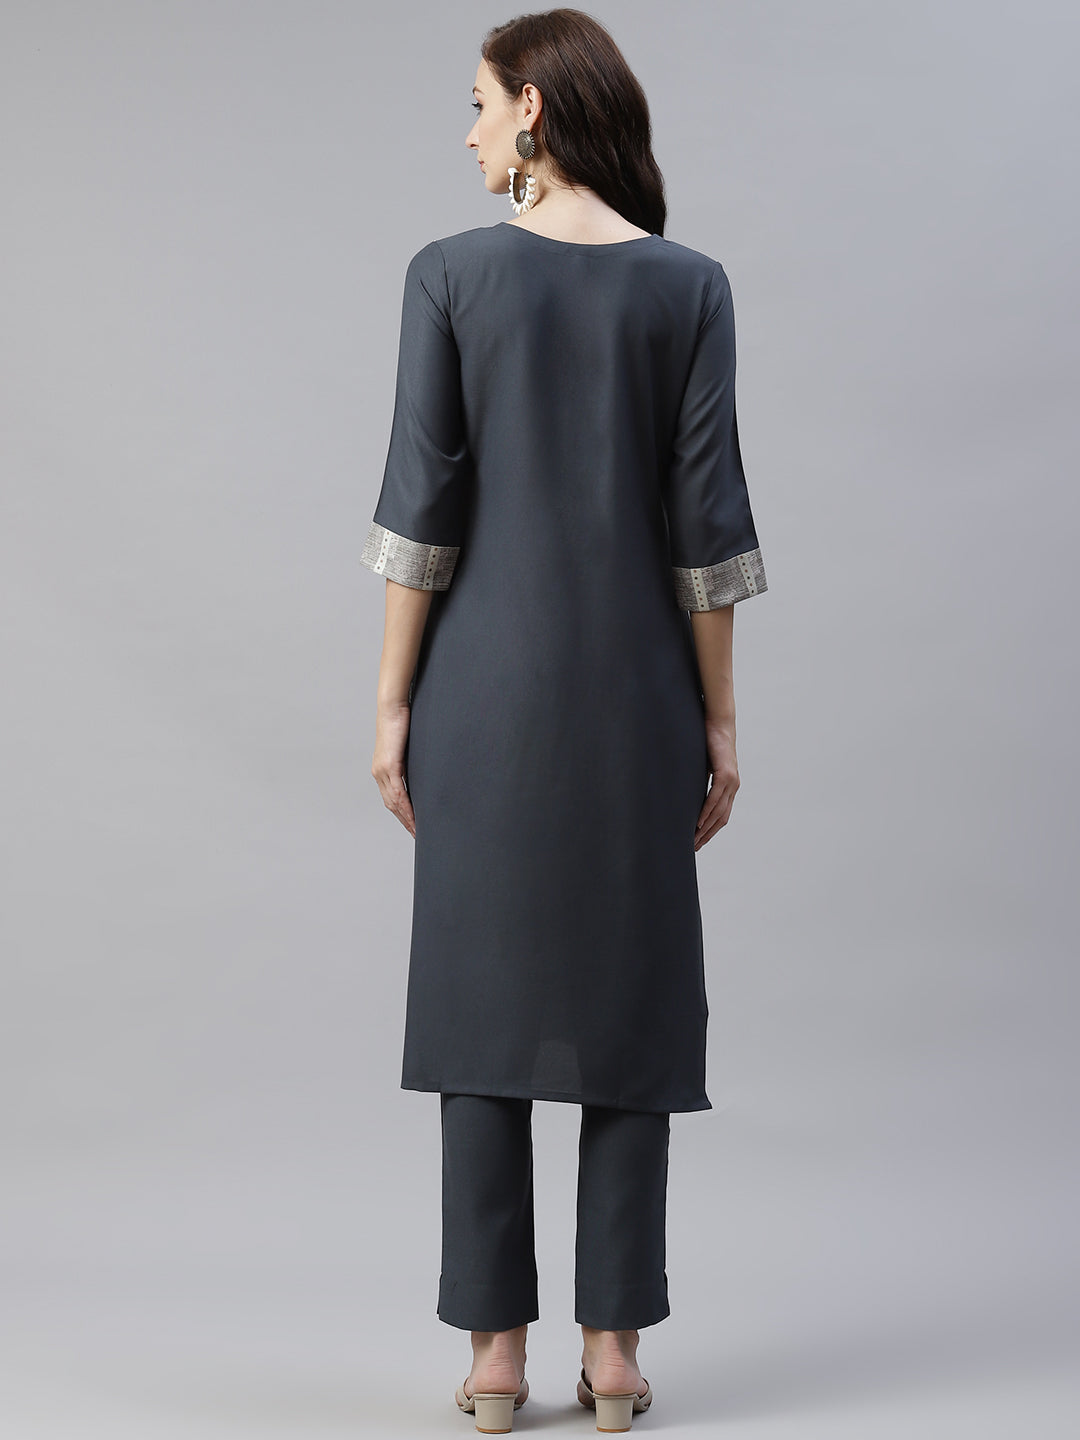 Women Grey Rayon Kurta With Pant by Ziyaa (2pcs Set)